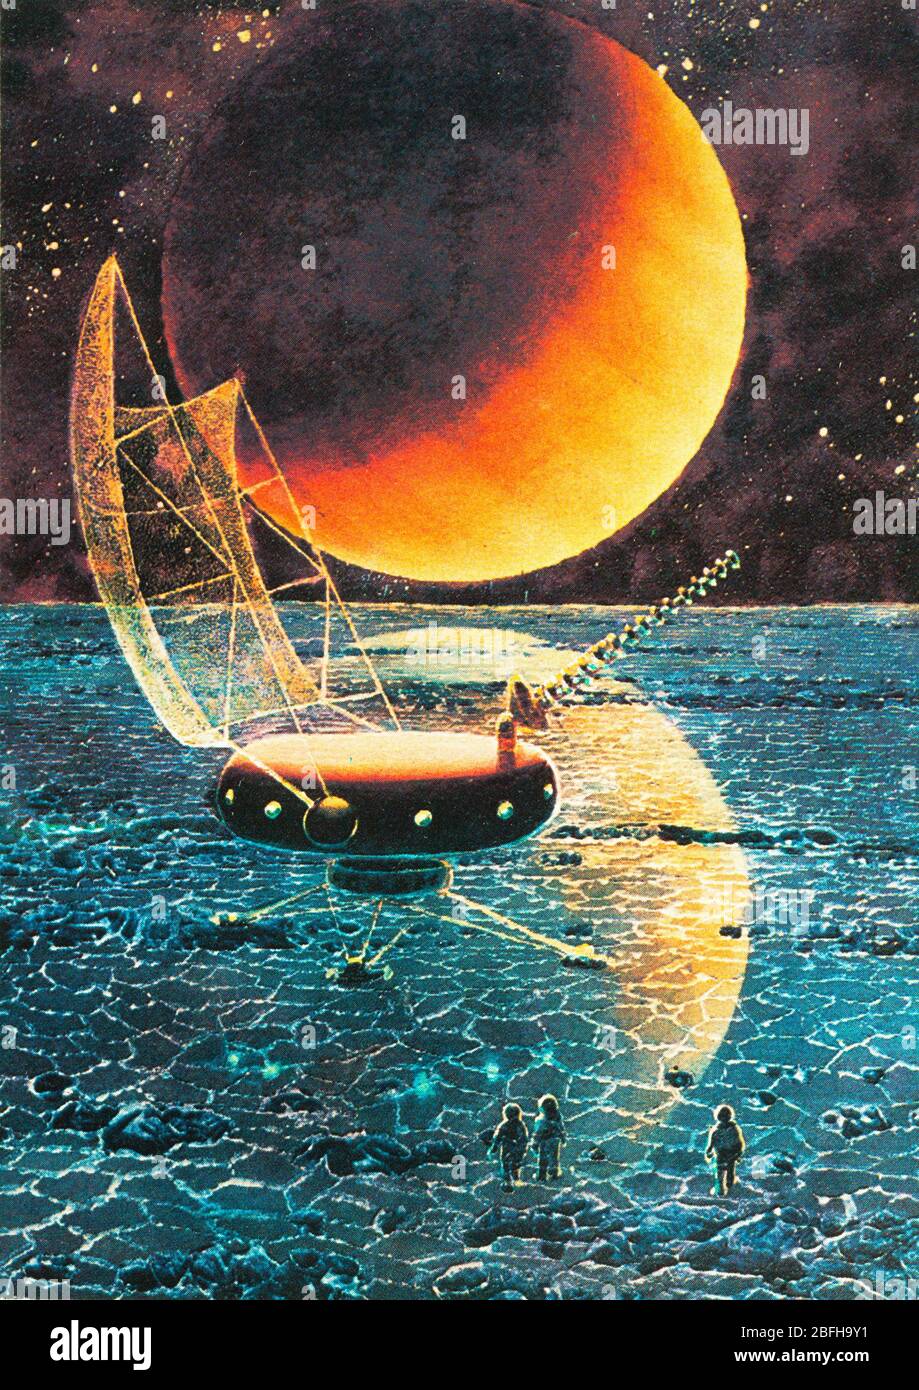 Exploration spatiale, art futuriste de A.Sokolov, de carte postale soviétique, années 1970 Banque D'Images